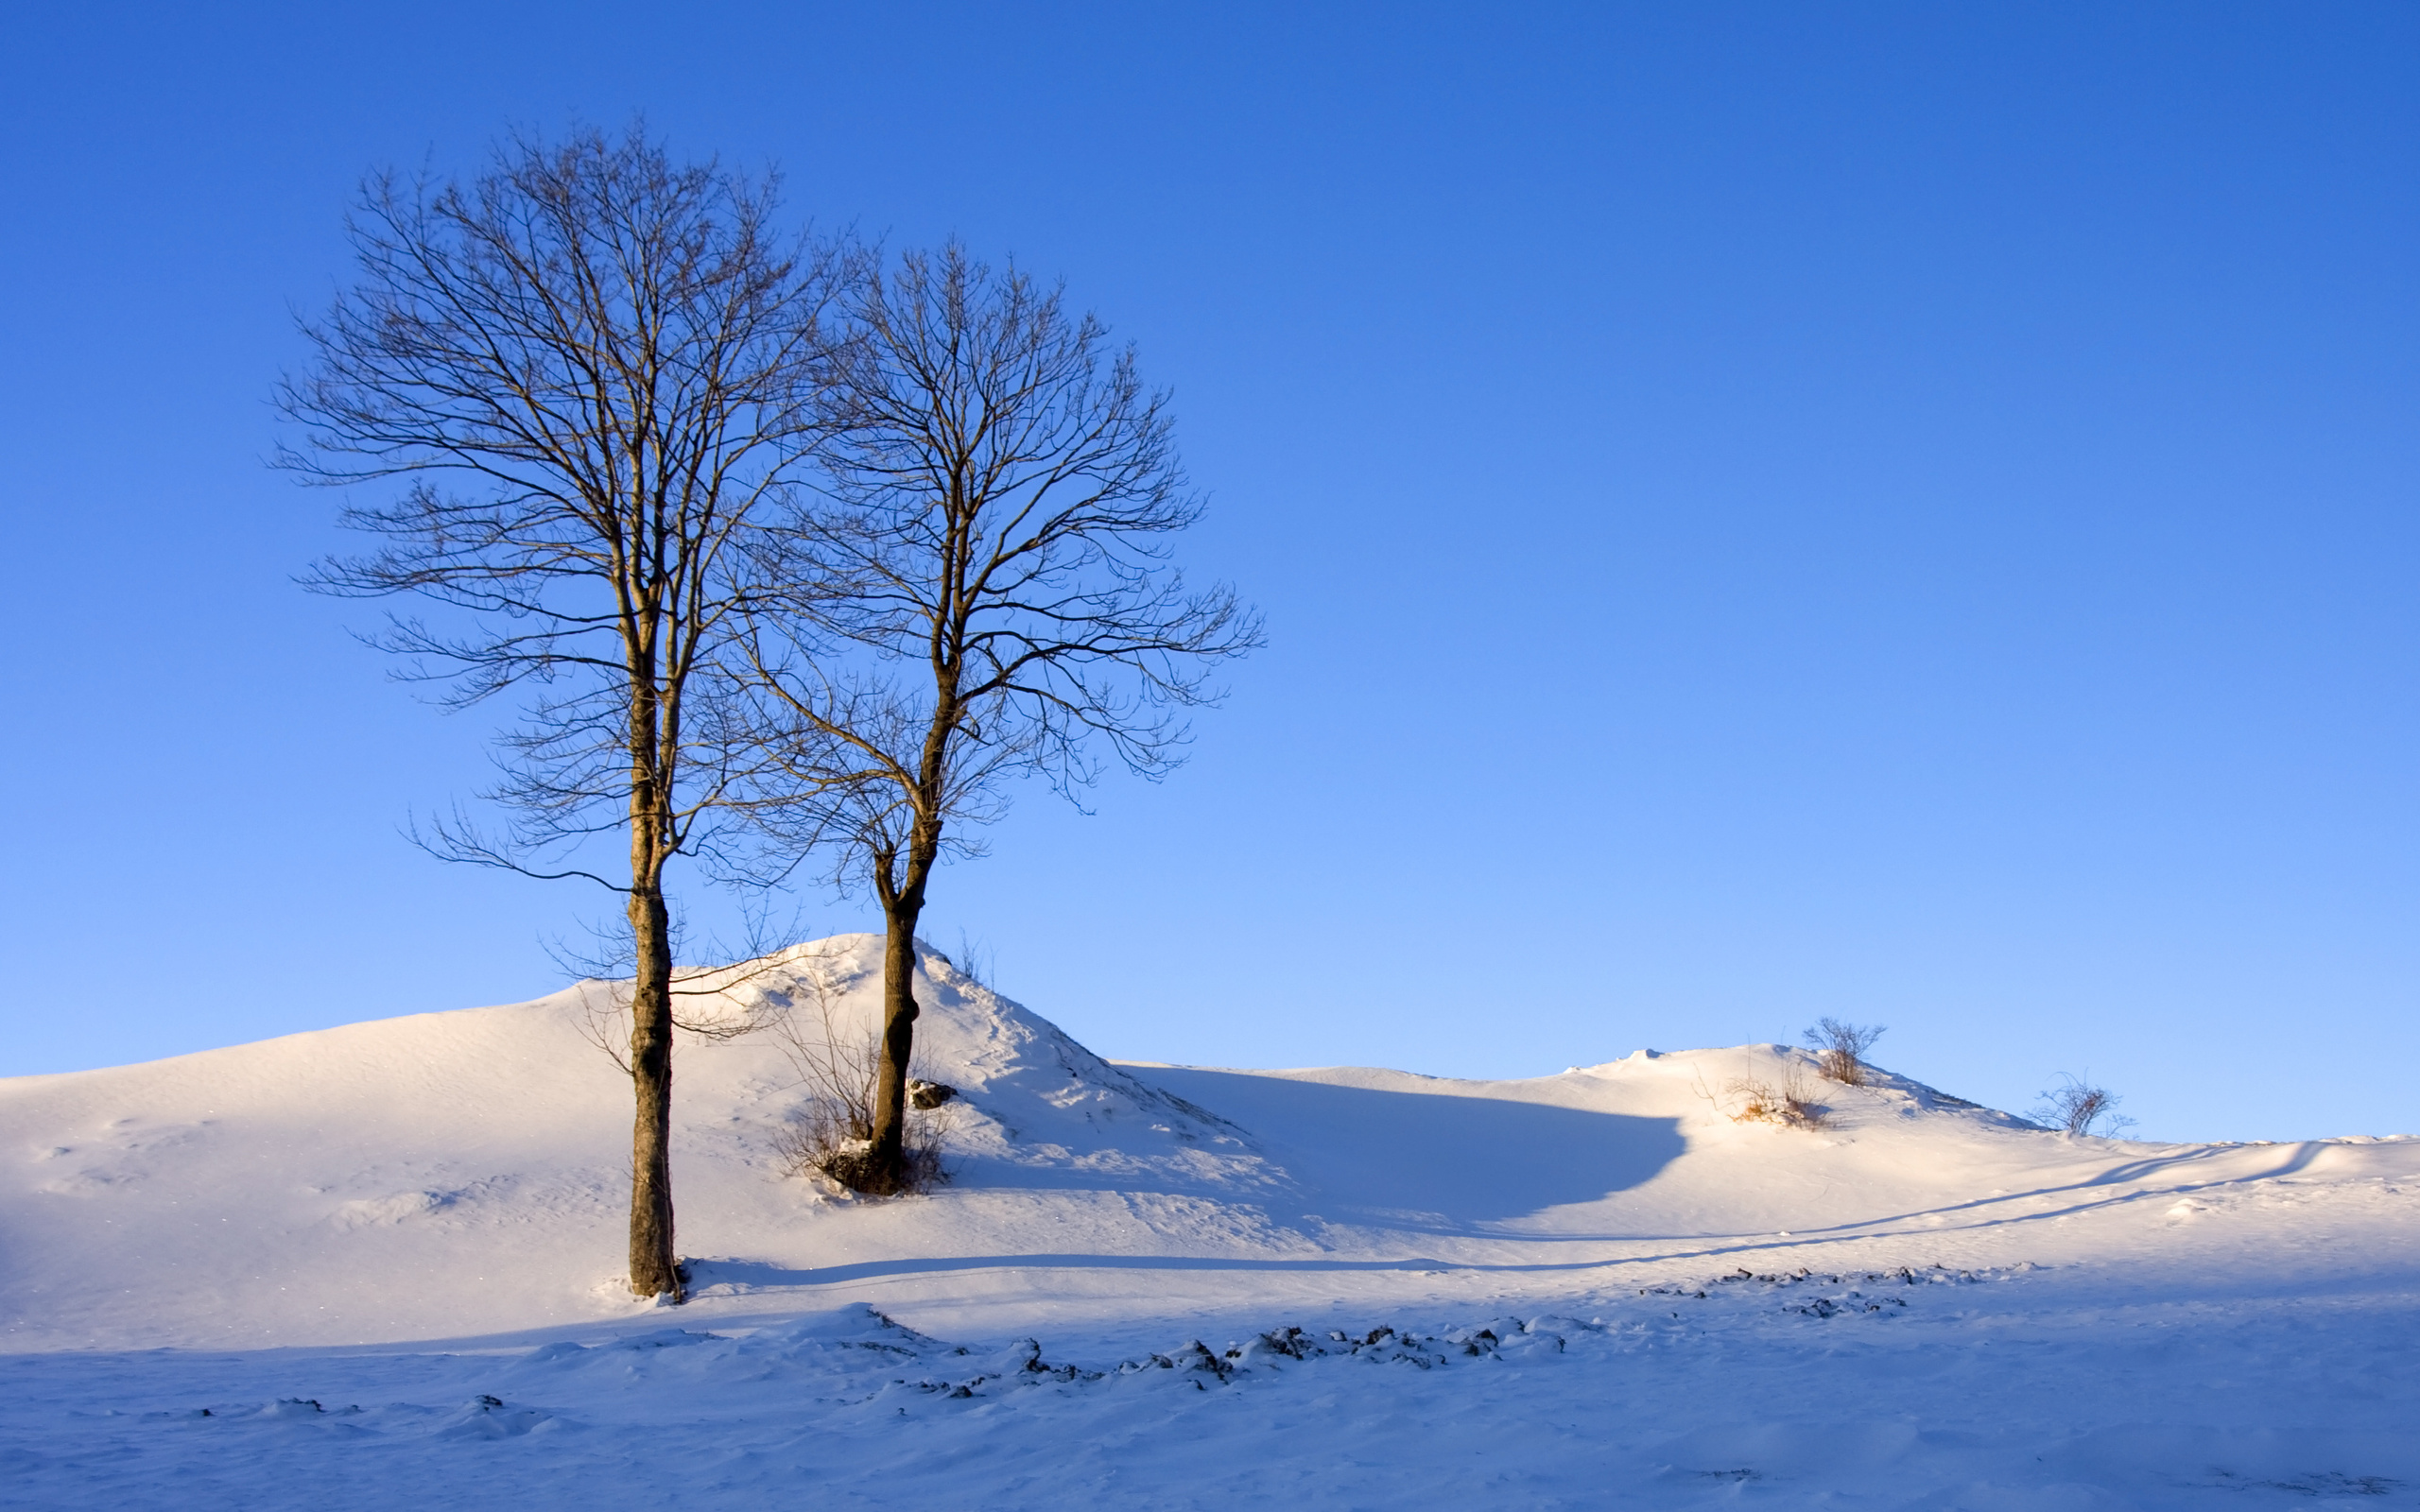 تصویر از طبیعت برفی و آسمان آبی با دو درخت بدون برگ و بار 